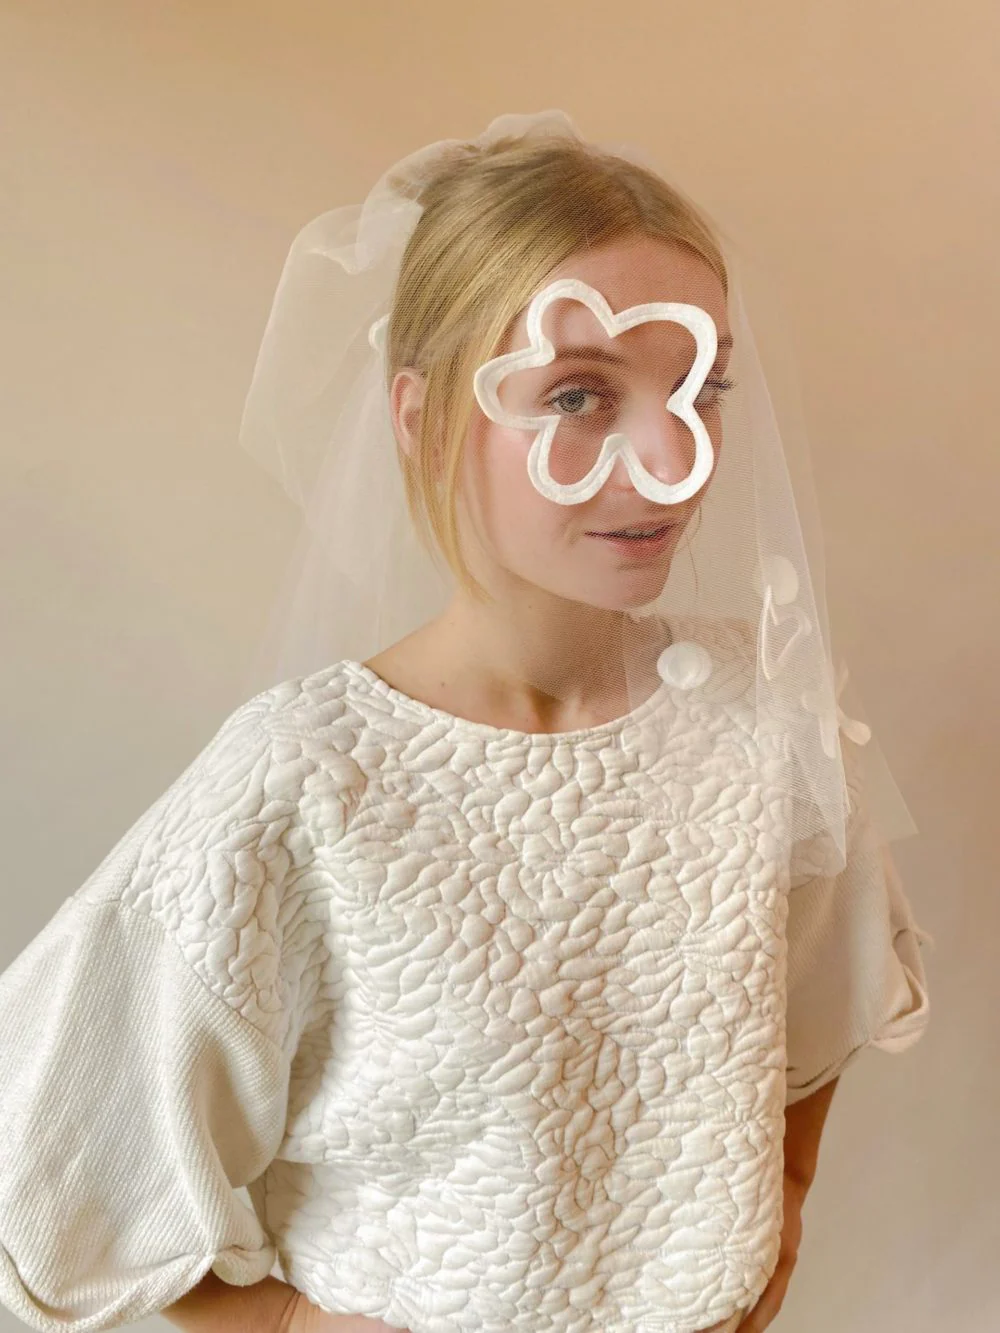 BLIS Bridal : Le vestiaire couture de la mariée et de ses invitées - Blog Mariage Madame C